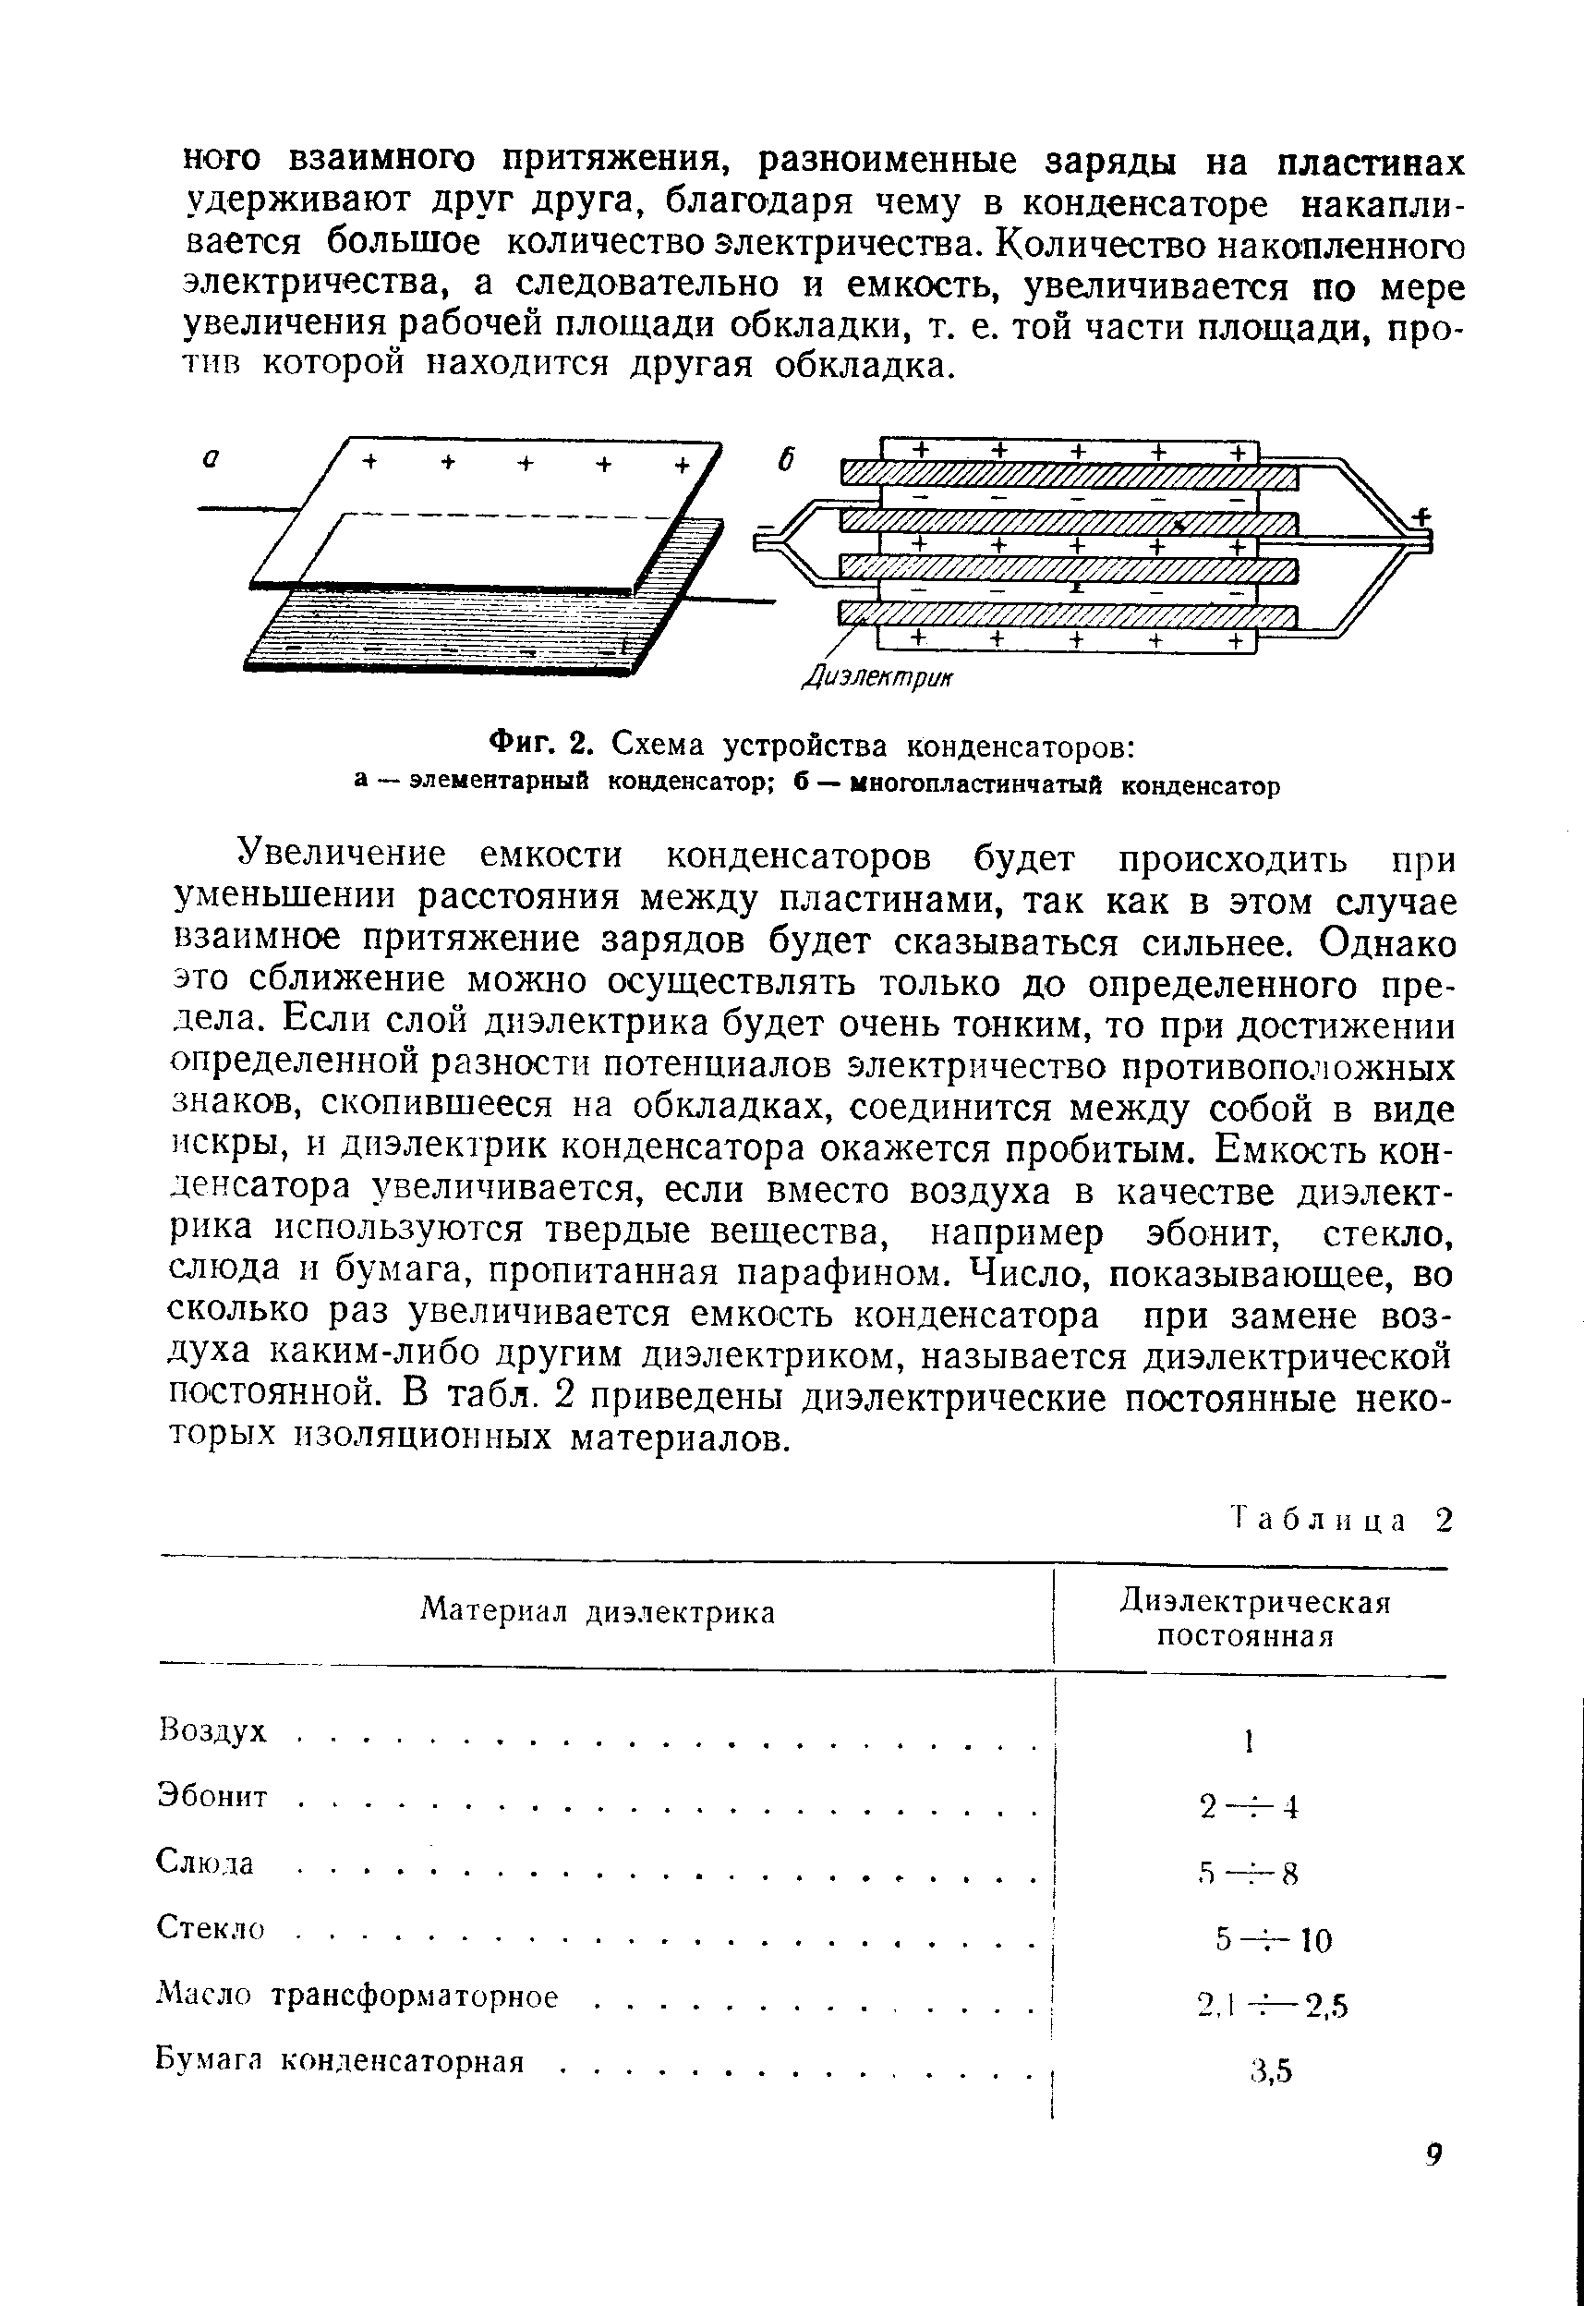 Фиг. 2. Схема устройства конденсаторов а — элементарный конденсатор б — многопластинчатый конденсатор
